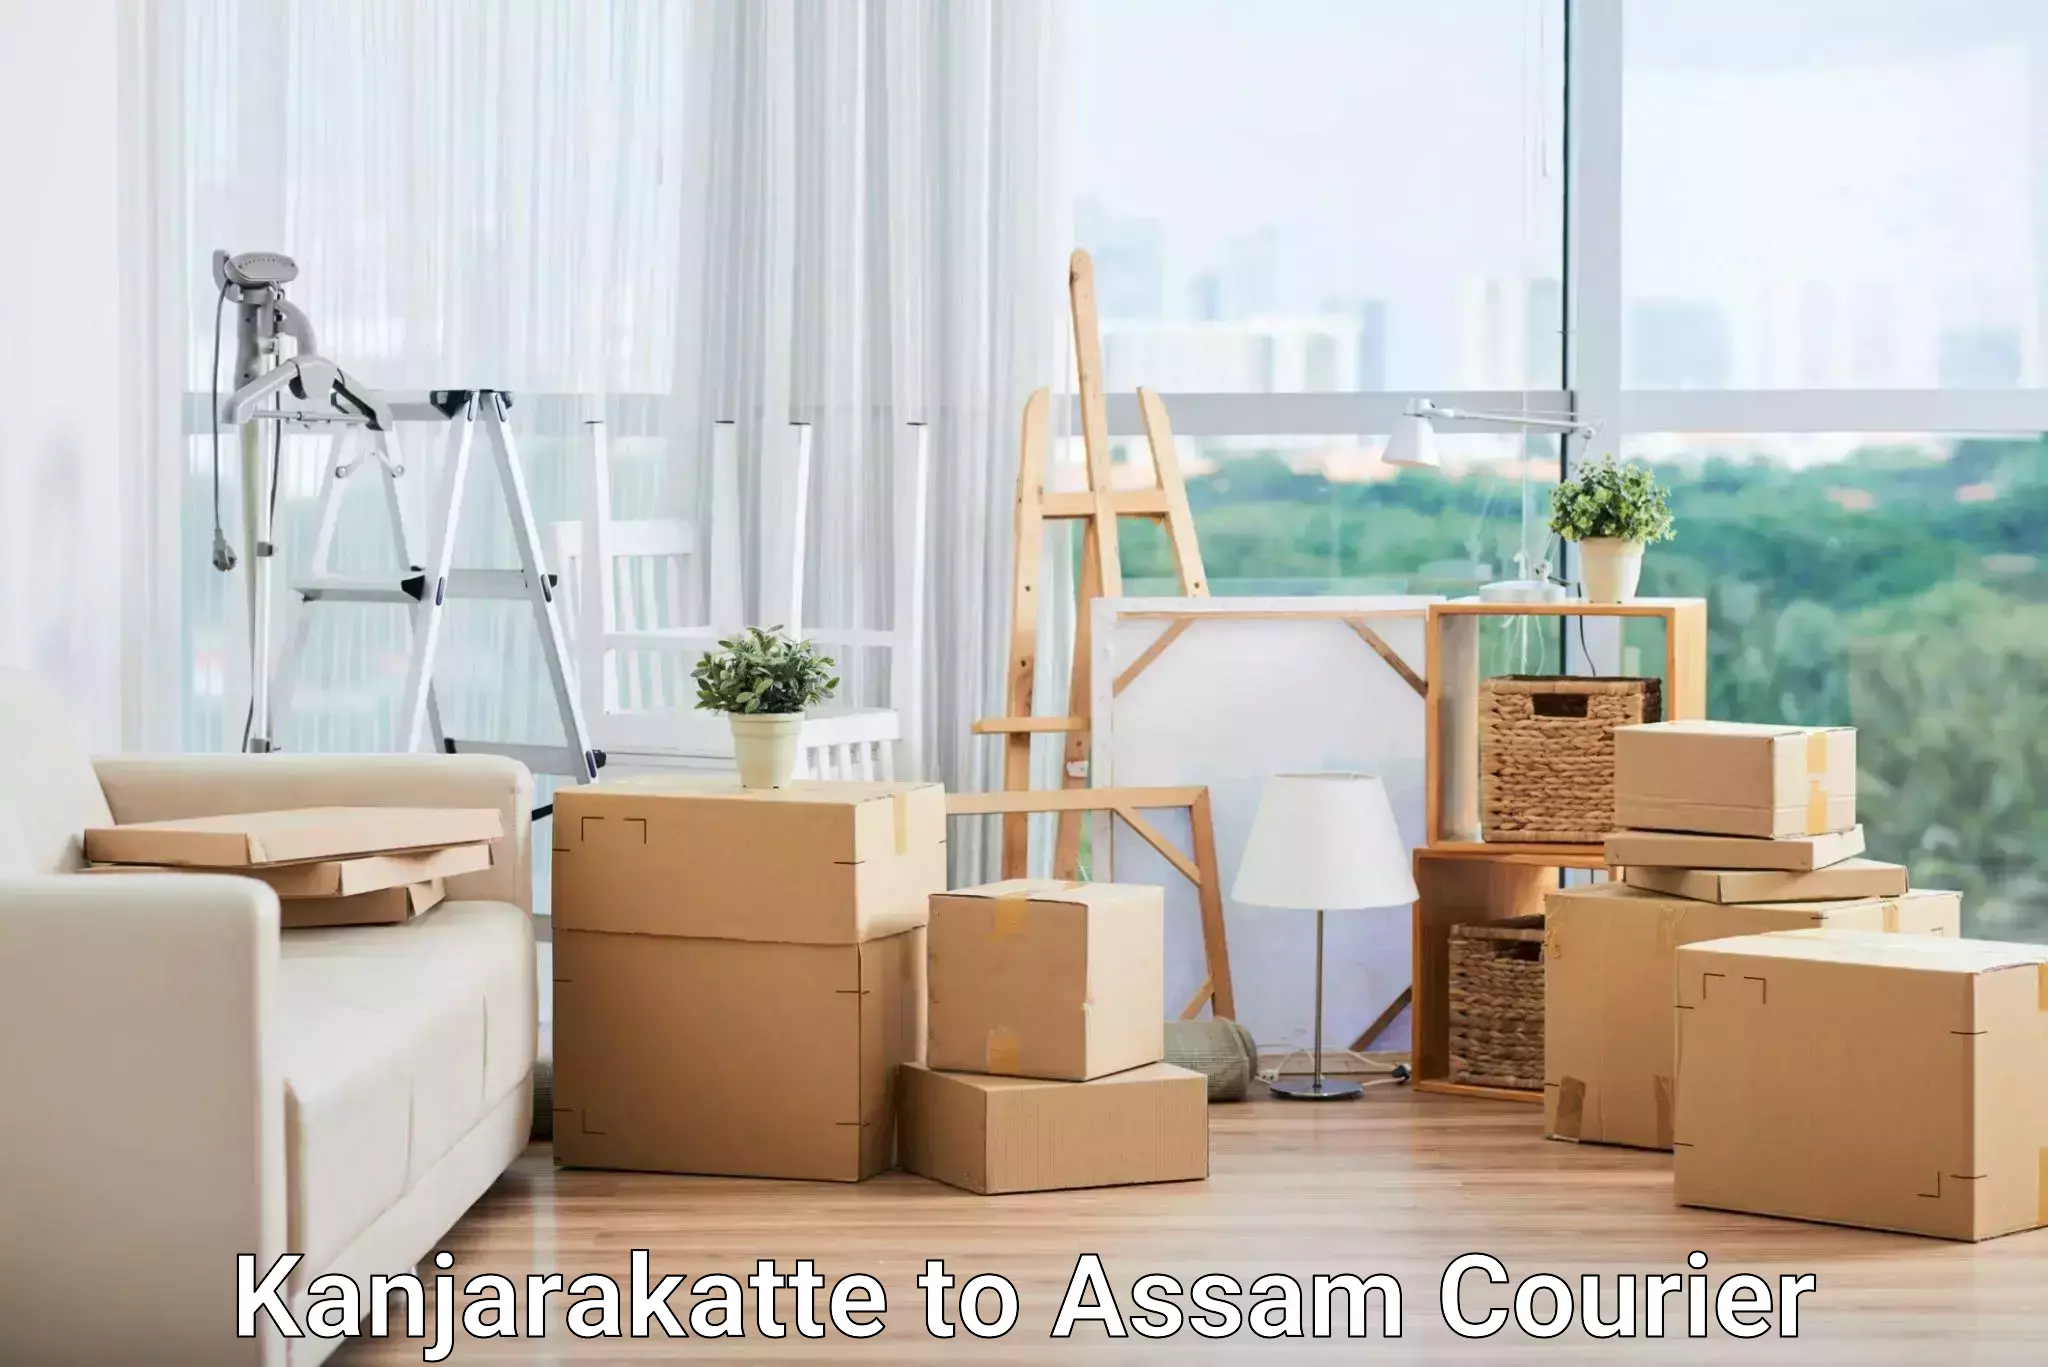 Cash on delivery service in Kanjarakatte to Assam